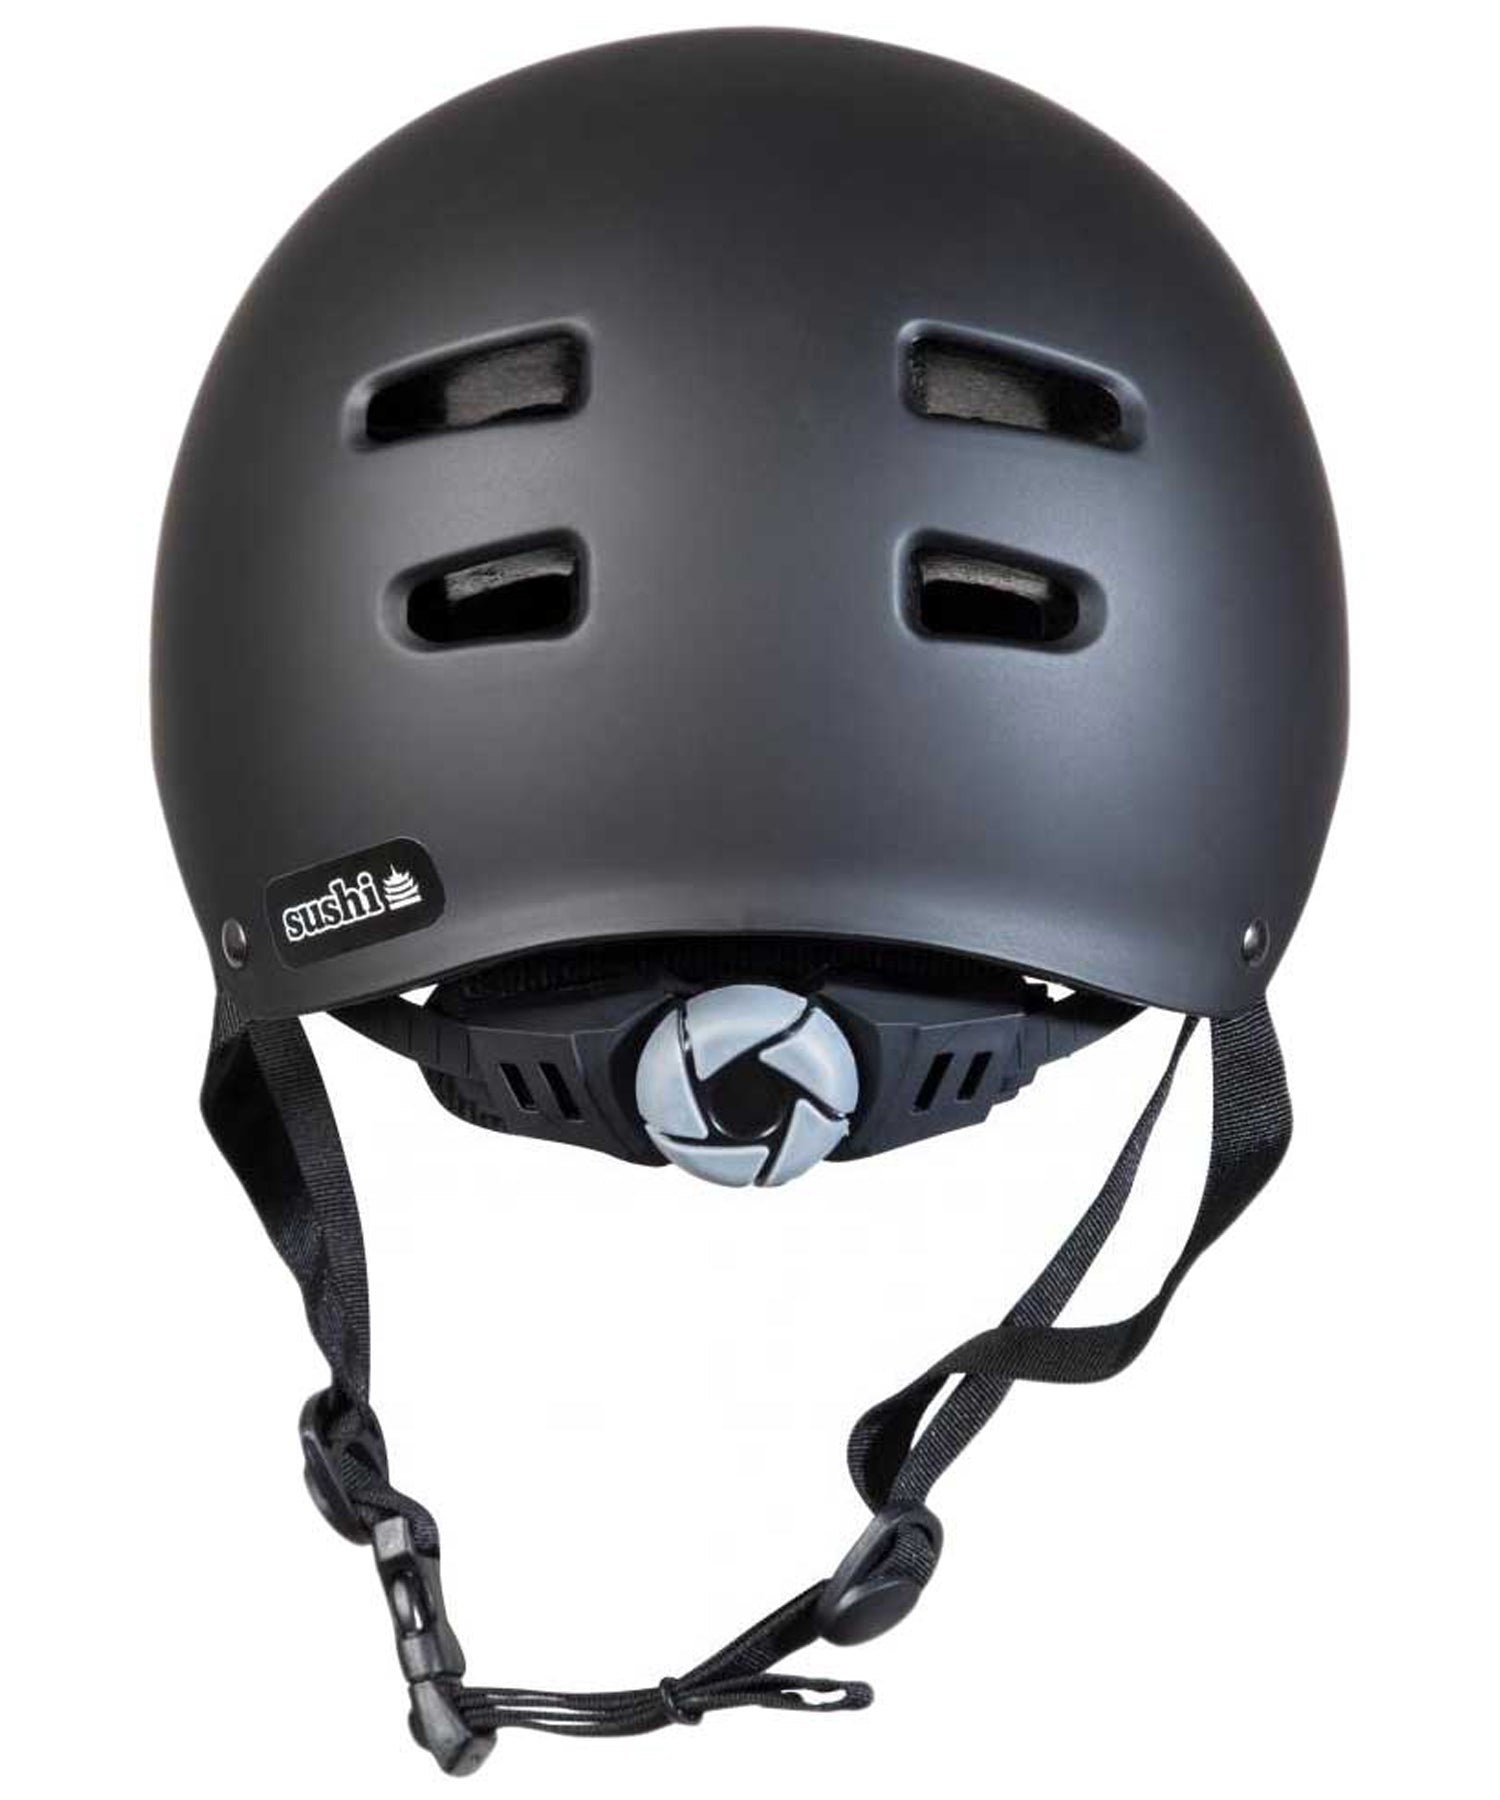 sushi-casco-protector-multi sport-de color negro-regulable-Carcasa de ABS moldeada por inyección de alta densidad.